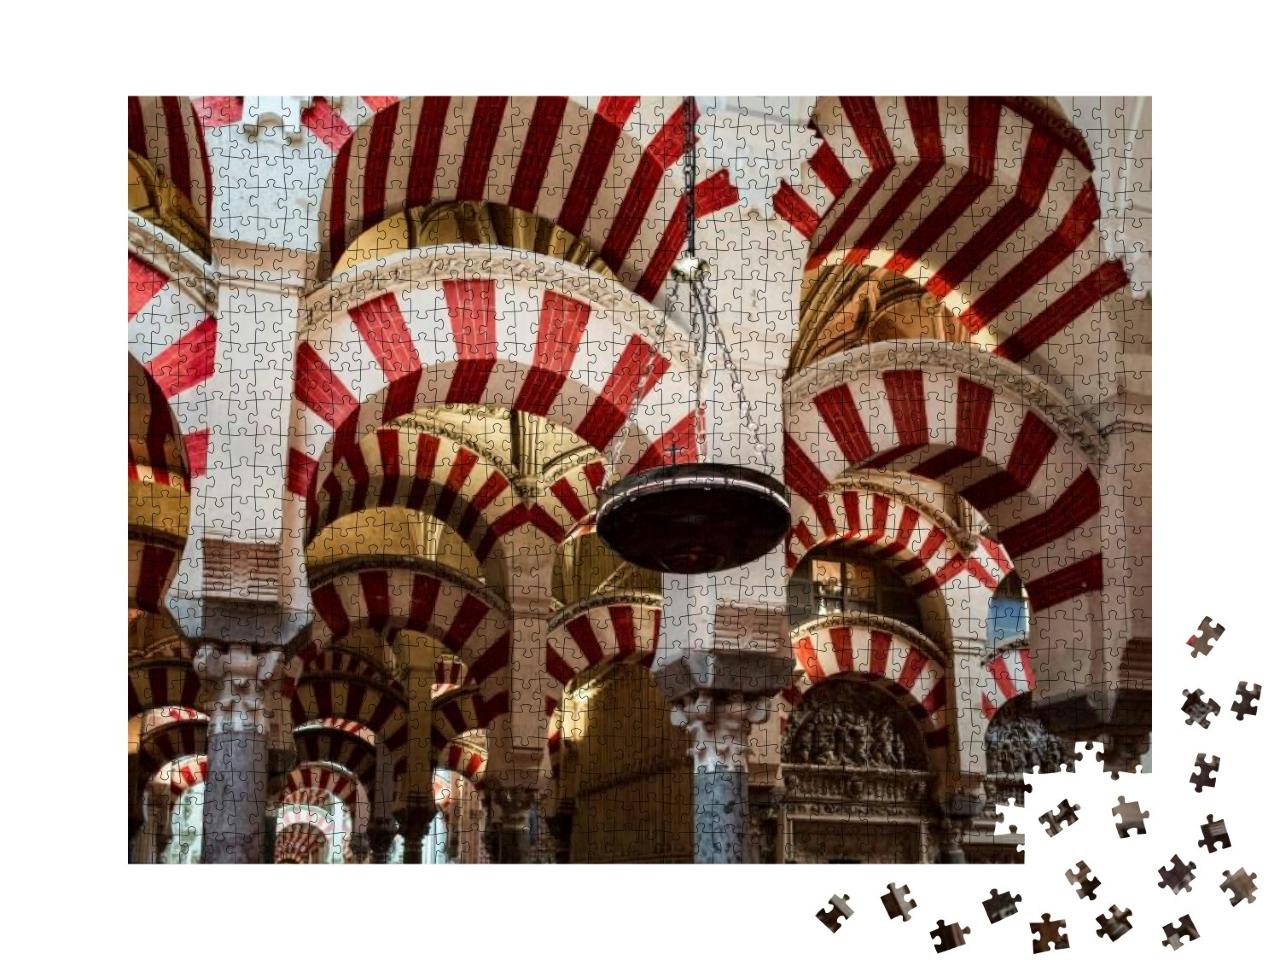 Puzzle 1000 Teile „Innenraum der Mezquita von Córdoba“